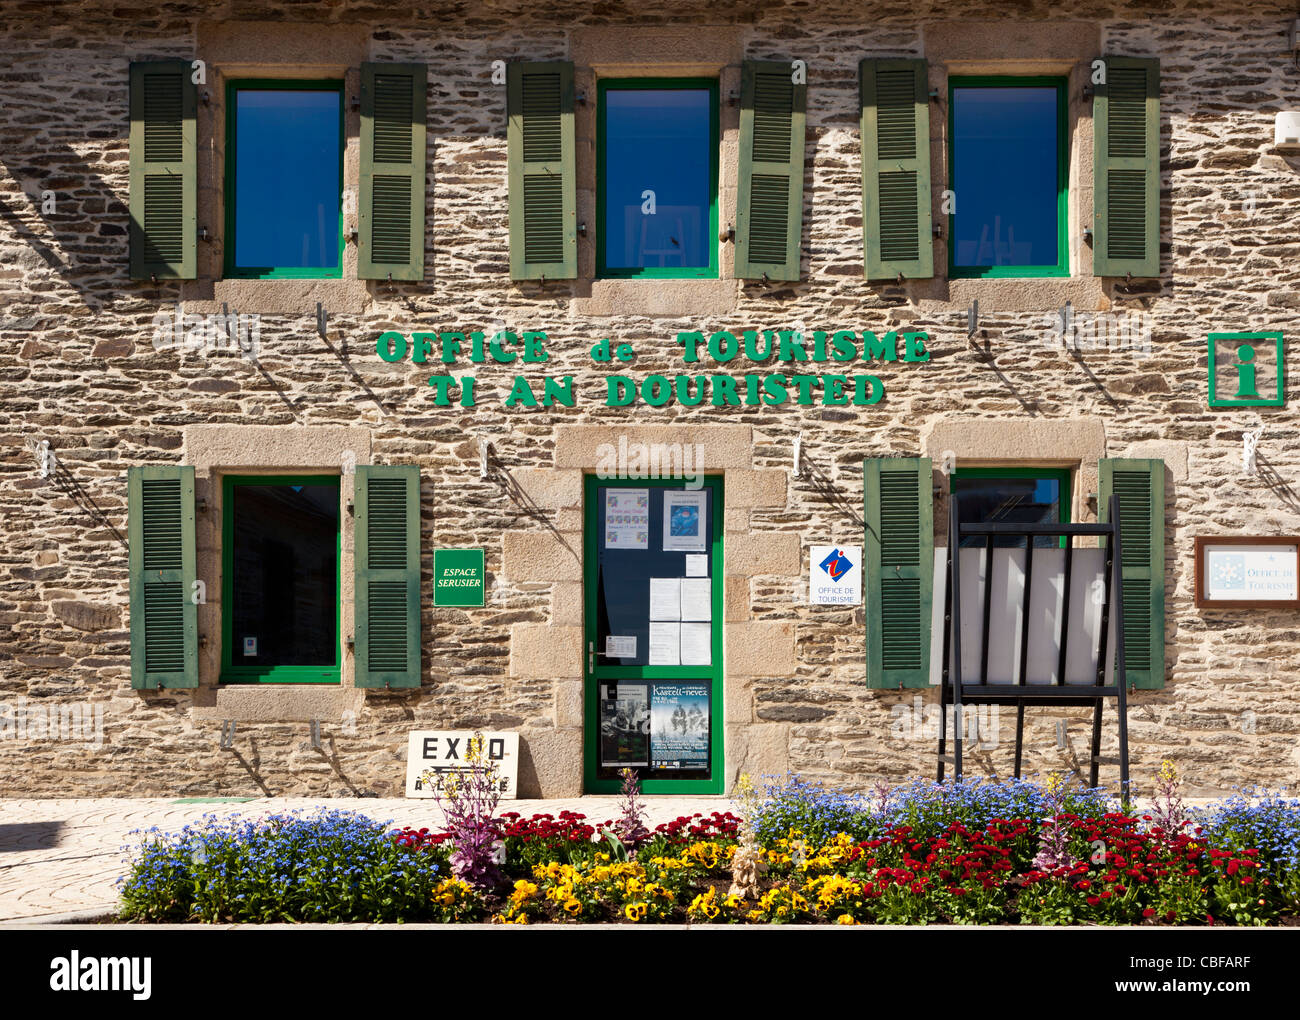 Jolie office de tourisme de Chateauneuf du faou, Finistère, Bretagne, France Banque D'Images